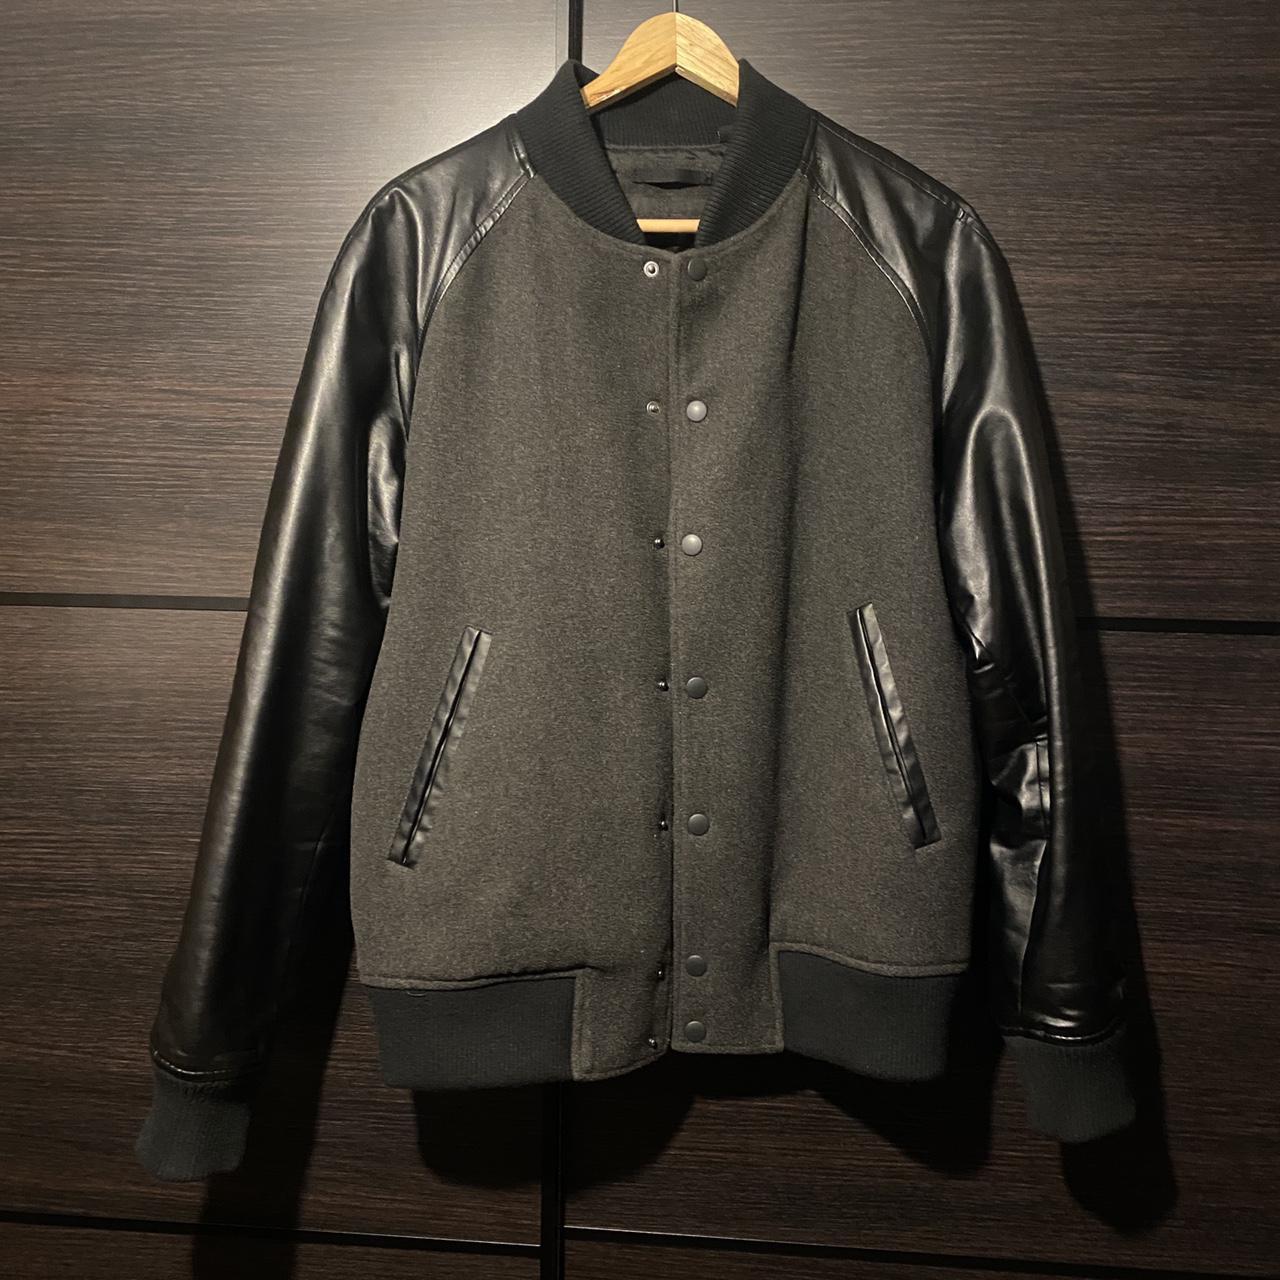 Uniqlo Varsity Bomber Jacket • Black Faux Leather... - Depop